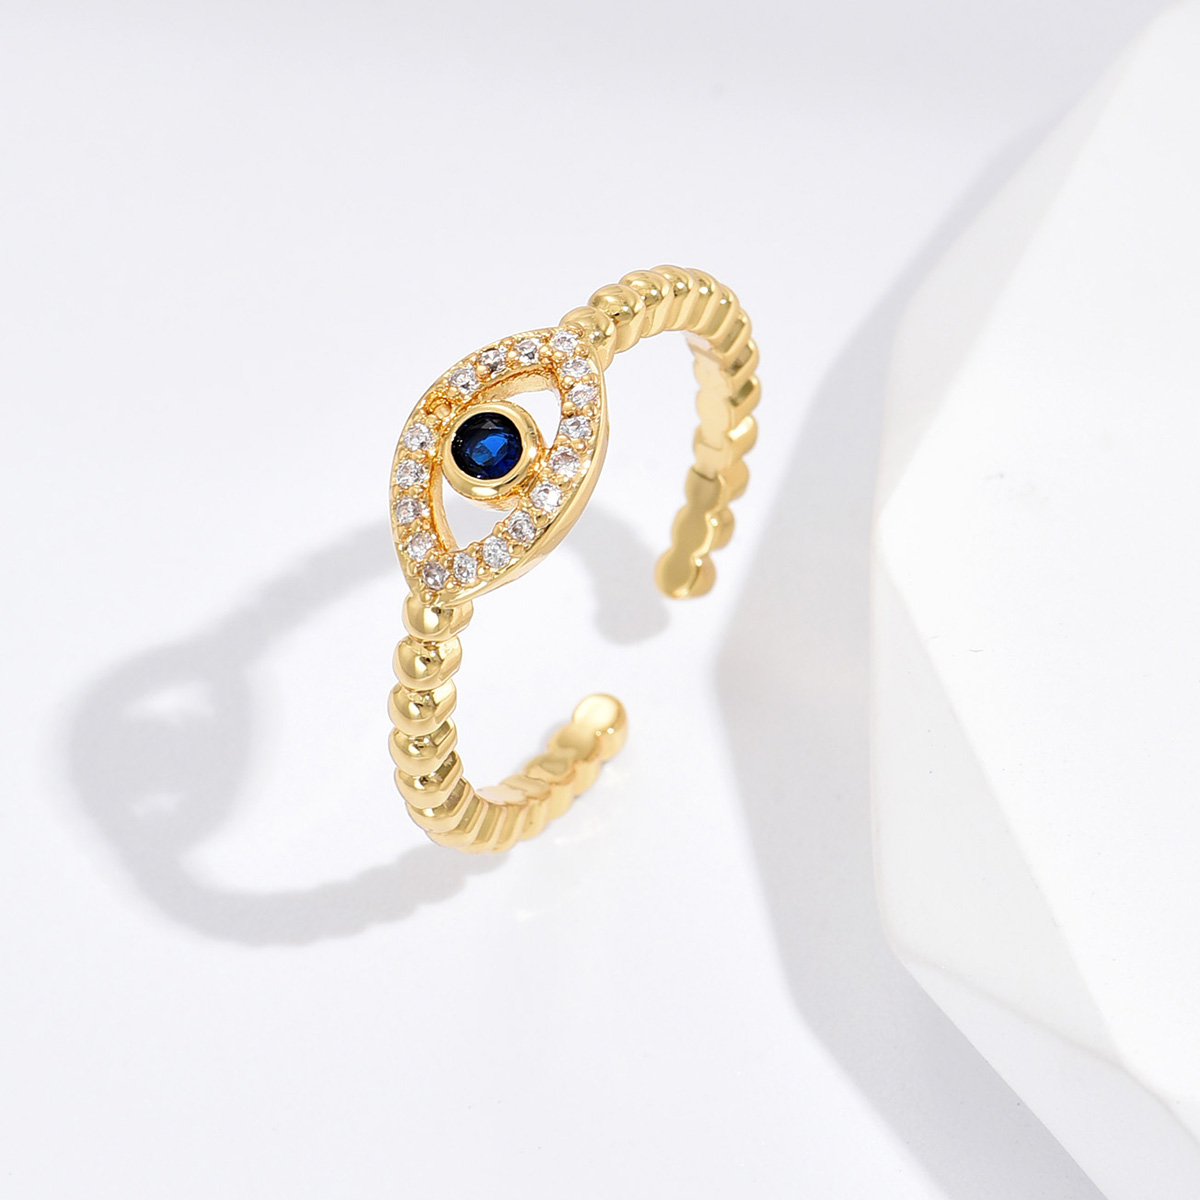 10 pcs - Blue Evil Eye Zircon Crystals Open Ring Adjustable in Gold|GCJ384|UK SELLER